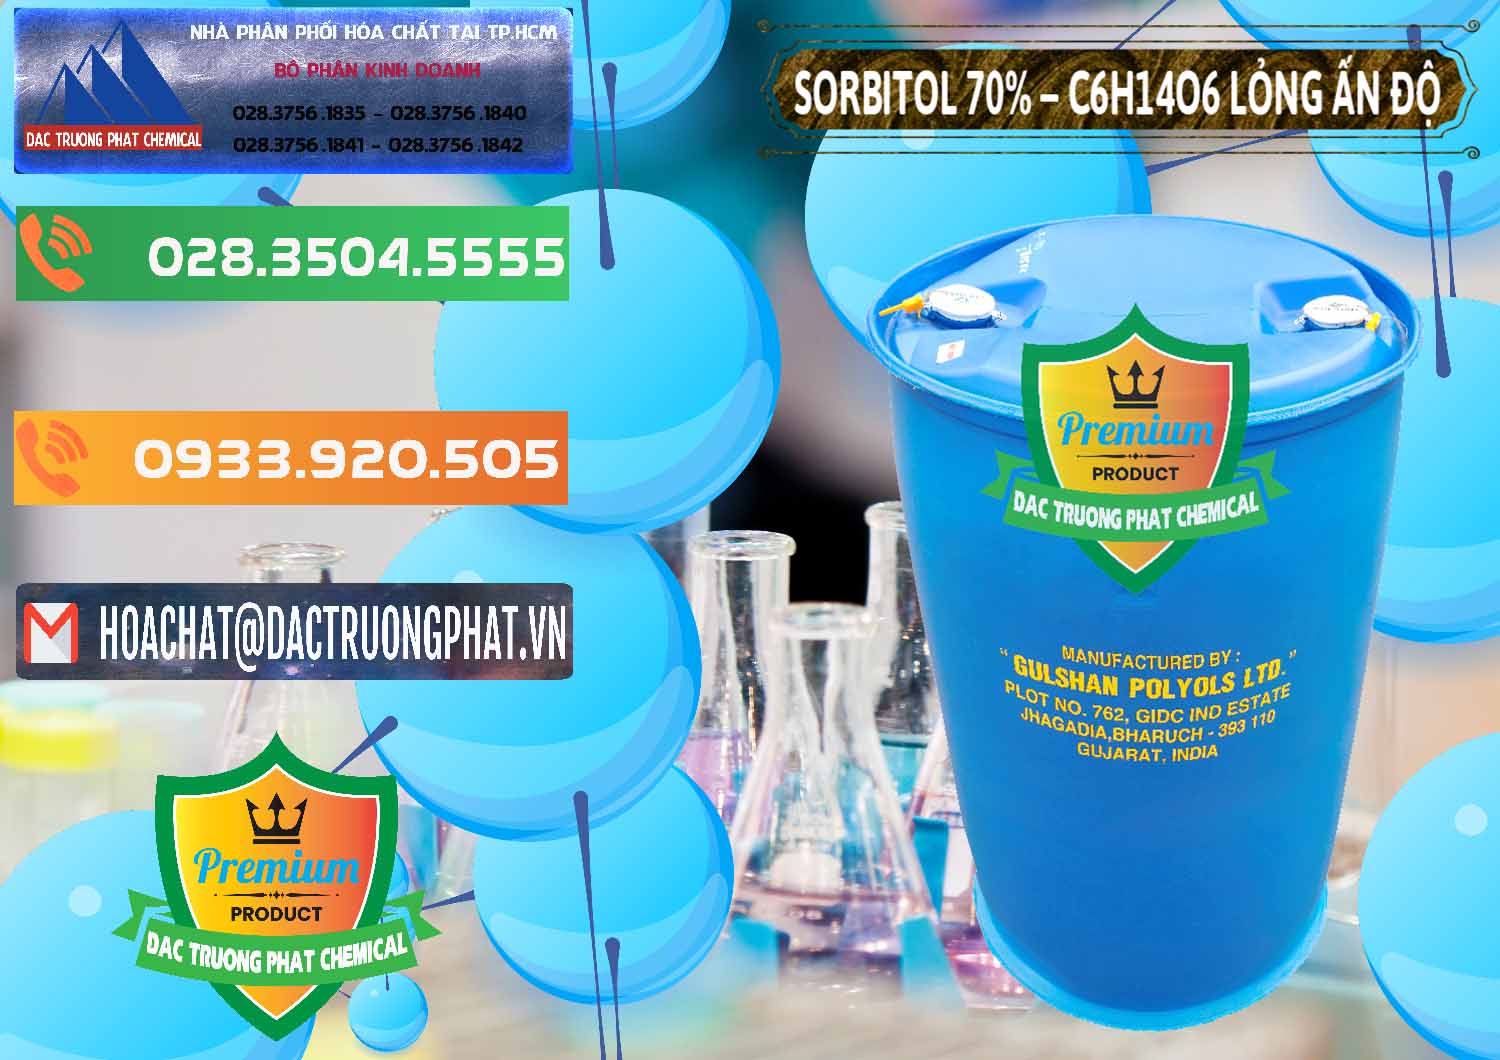 Cty kinh doanh - bán Sorbitol - C6H14O6 Lỏng 70% Food Grade Ấn Độ India - 0152 - Nhà phân phối _ bán hóa chất tại TP.HCM - hoachatxulynuoc.com.vn